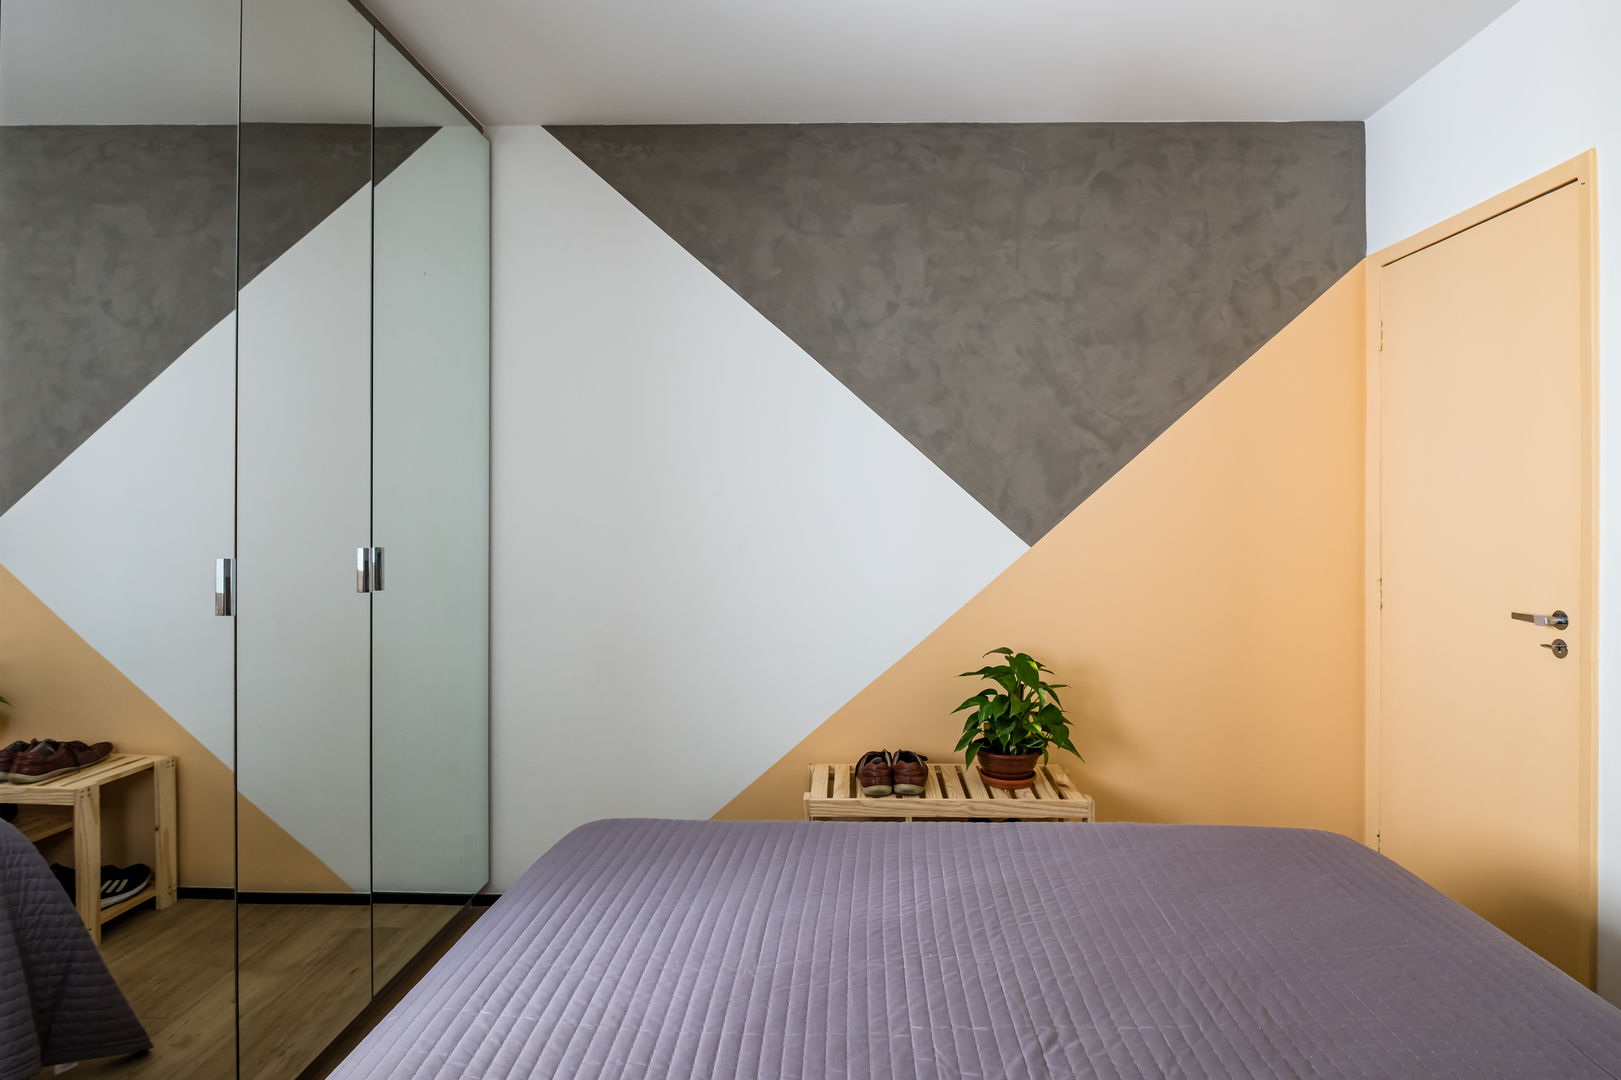 Apartamento Compacto para aluguel em tons neutros sem perder a personalidade, Studio Elã Studio Elã Small bedroom Concrete